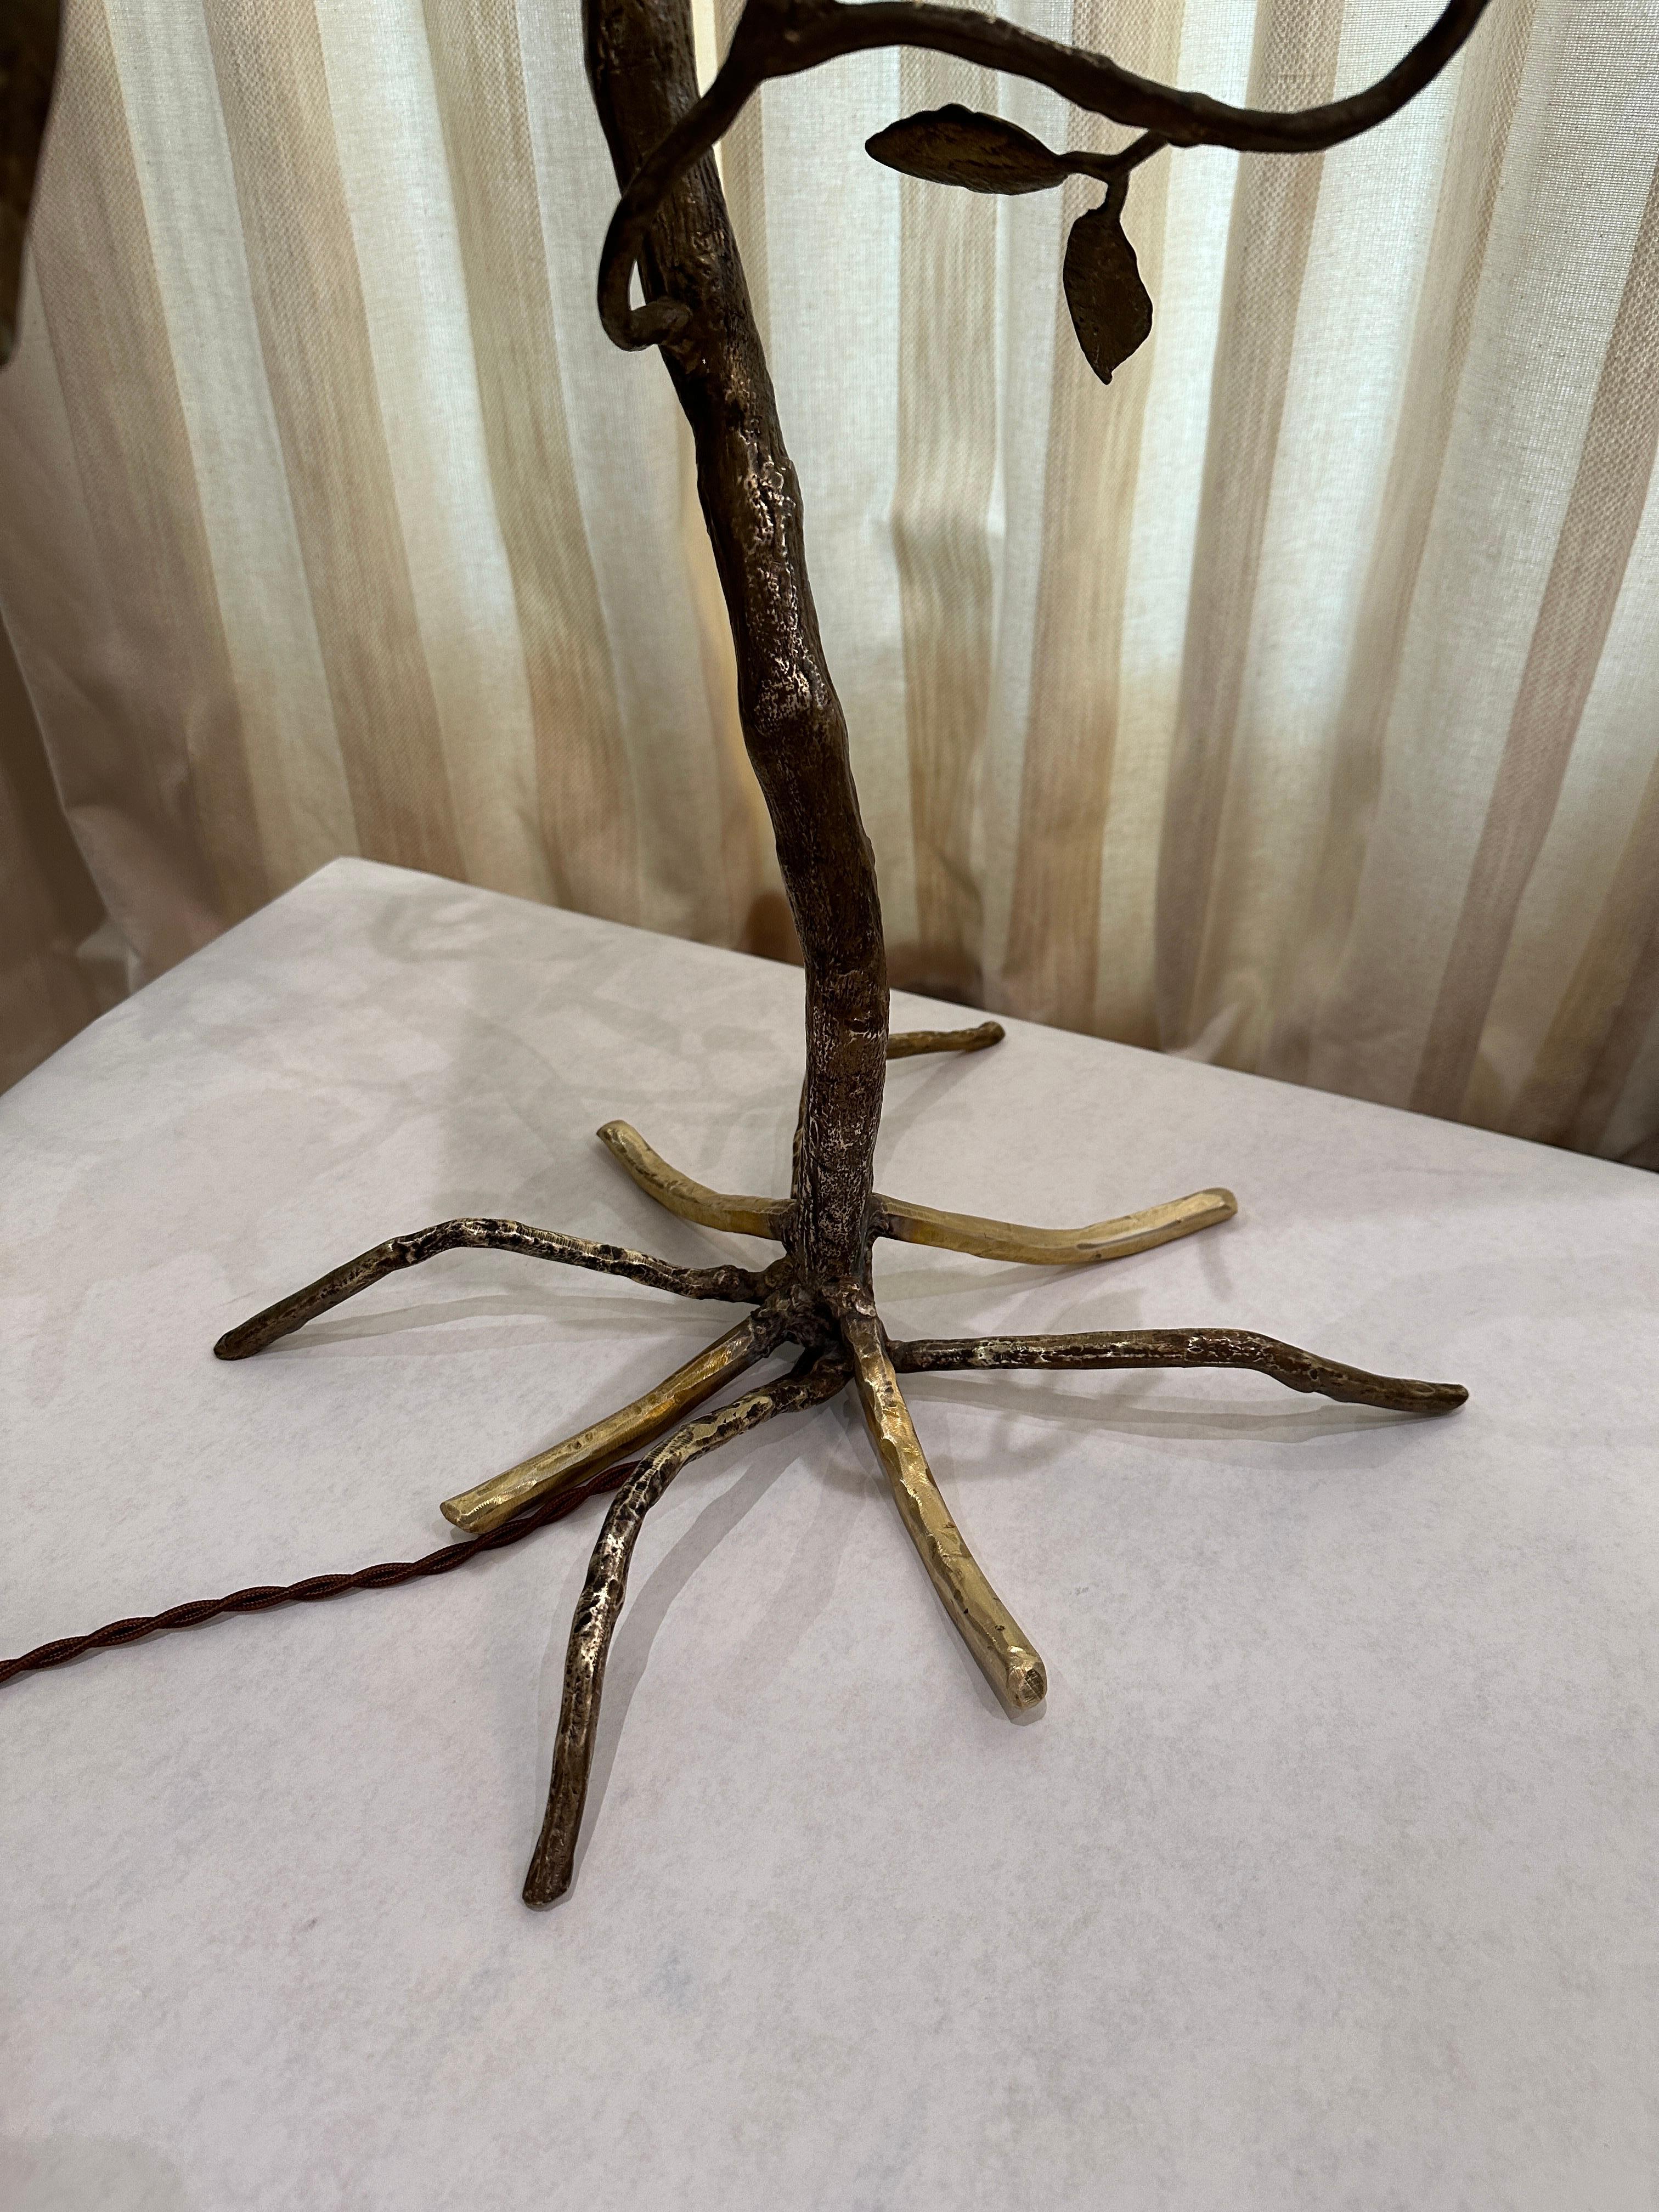 Semblable aux œuvres de Lalanne ou de Giacometti, cet arbre en bronze merveilleusement travaillé, orné de diverses feuilles et de perroquets sur les branches, a été recâblé et n'est pas livré avec l'abat-jour illustré (photo uniquement). Tant de